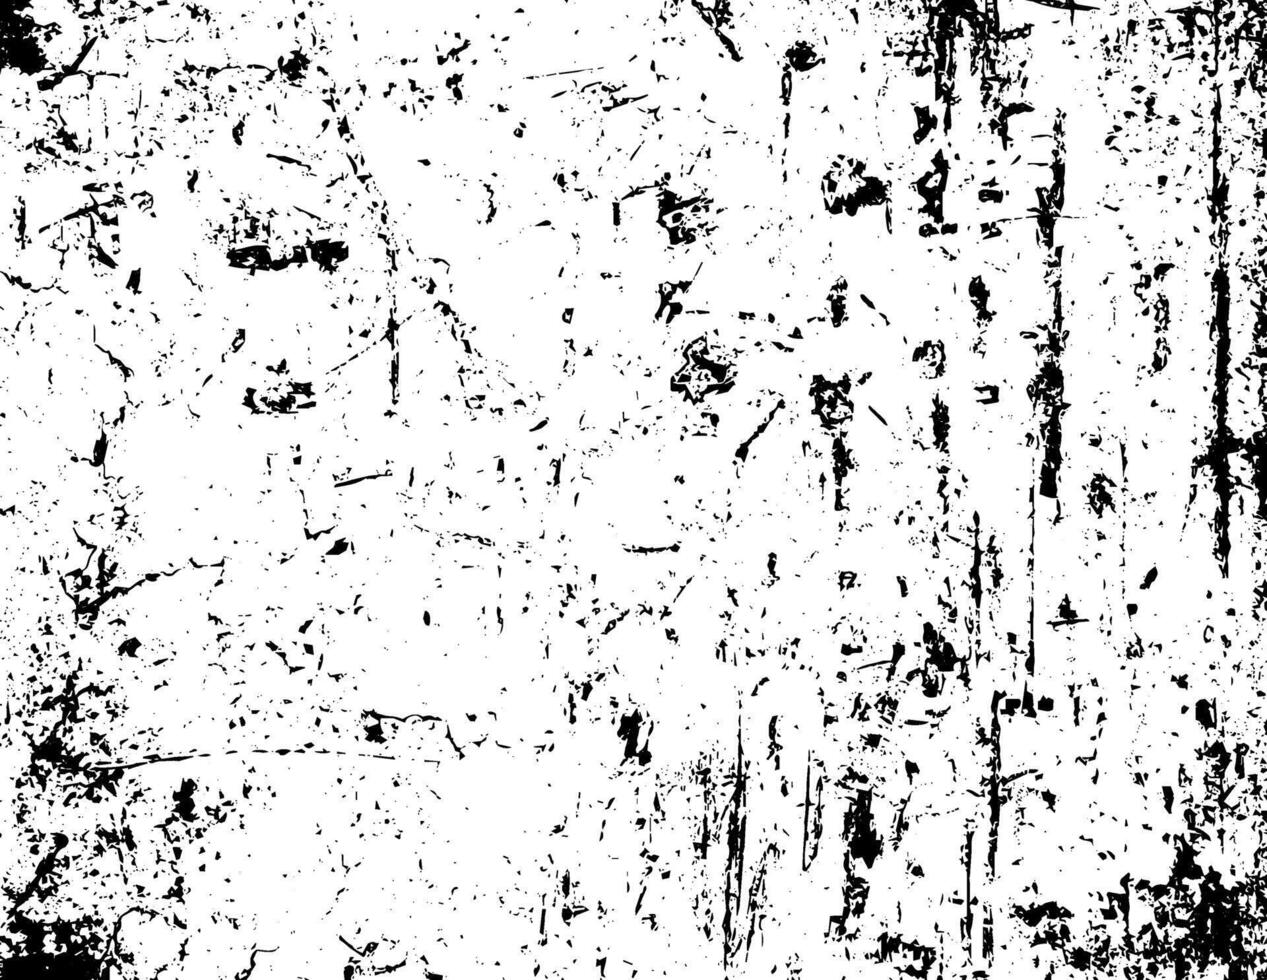 textura rústica do vetor do grunge com grão e manchas. fundo de ruído abstrato. superfície desgastada.